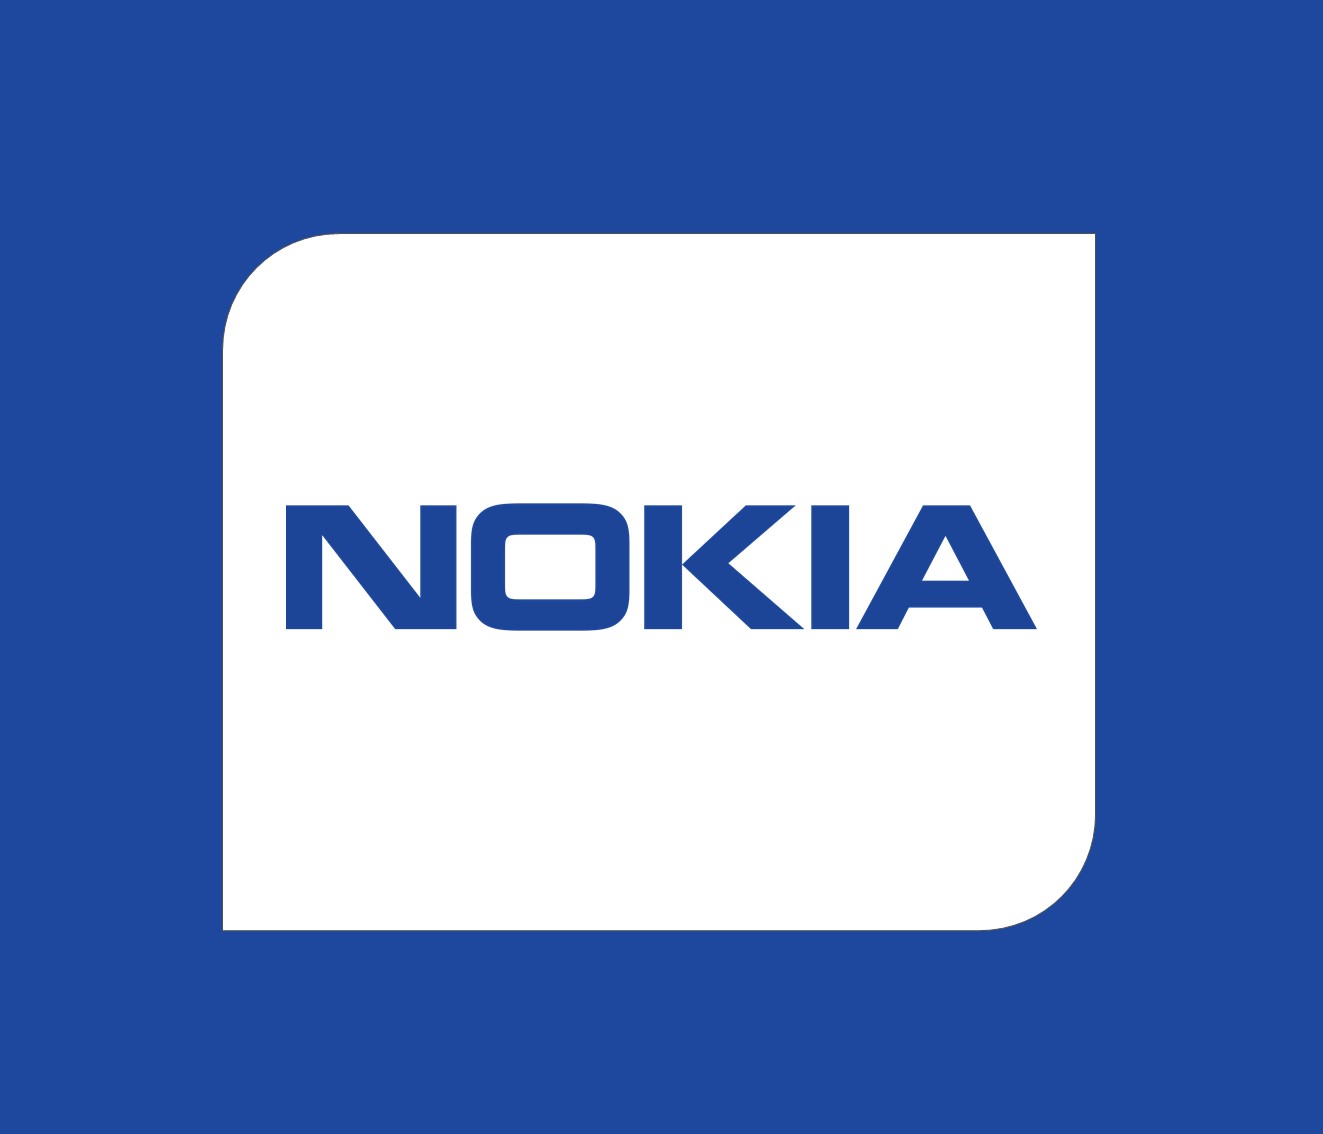 Nokia Jobs